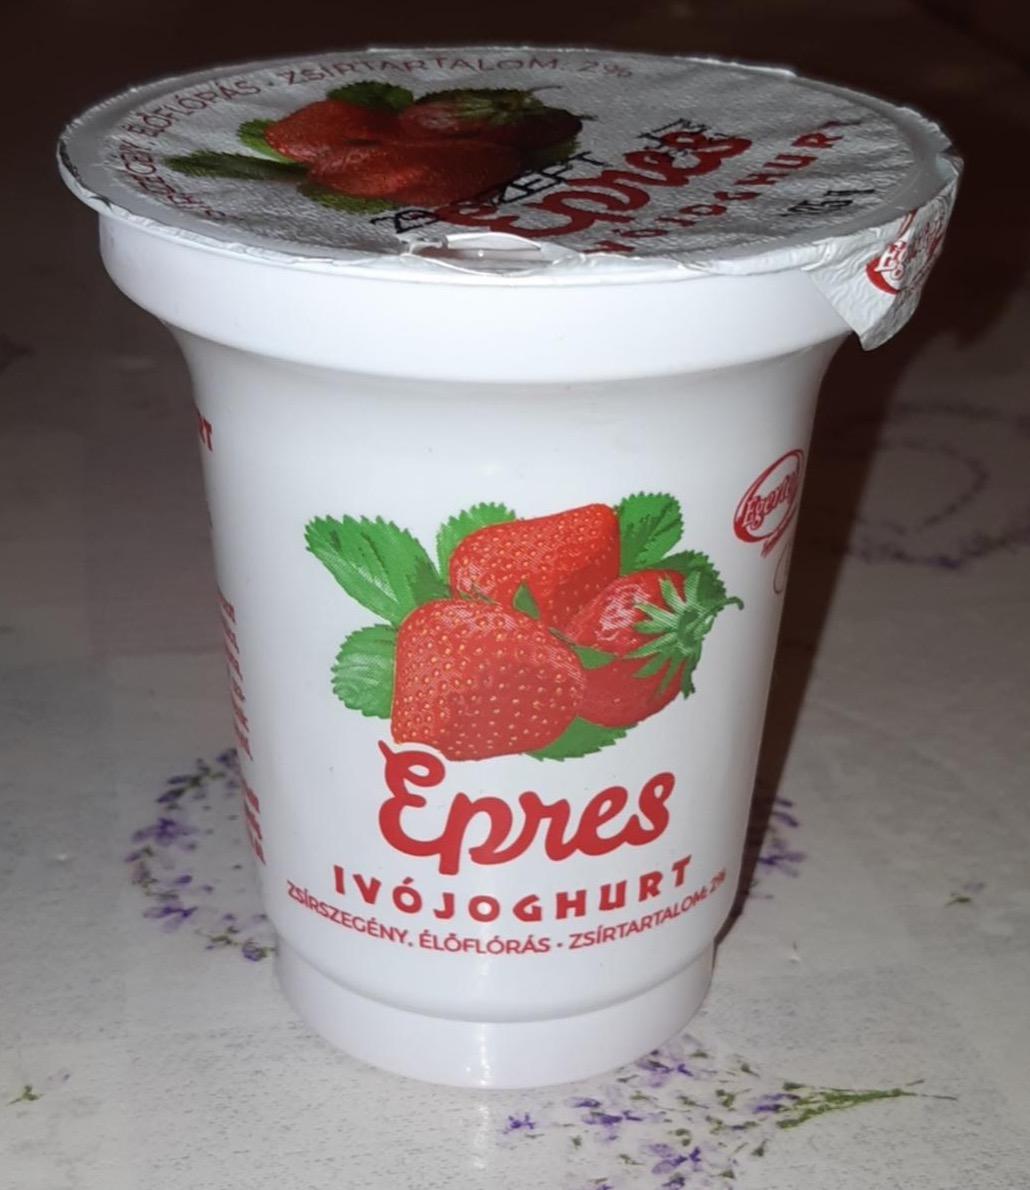 Képek - Egri poharas ivójoghurt epres Egertej